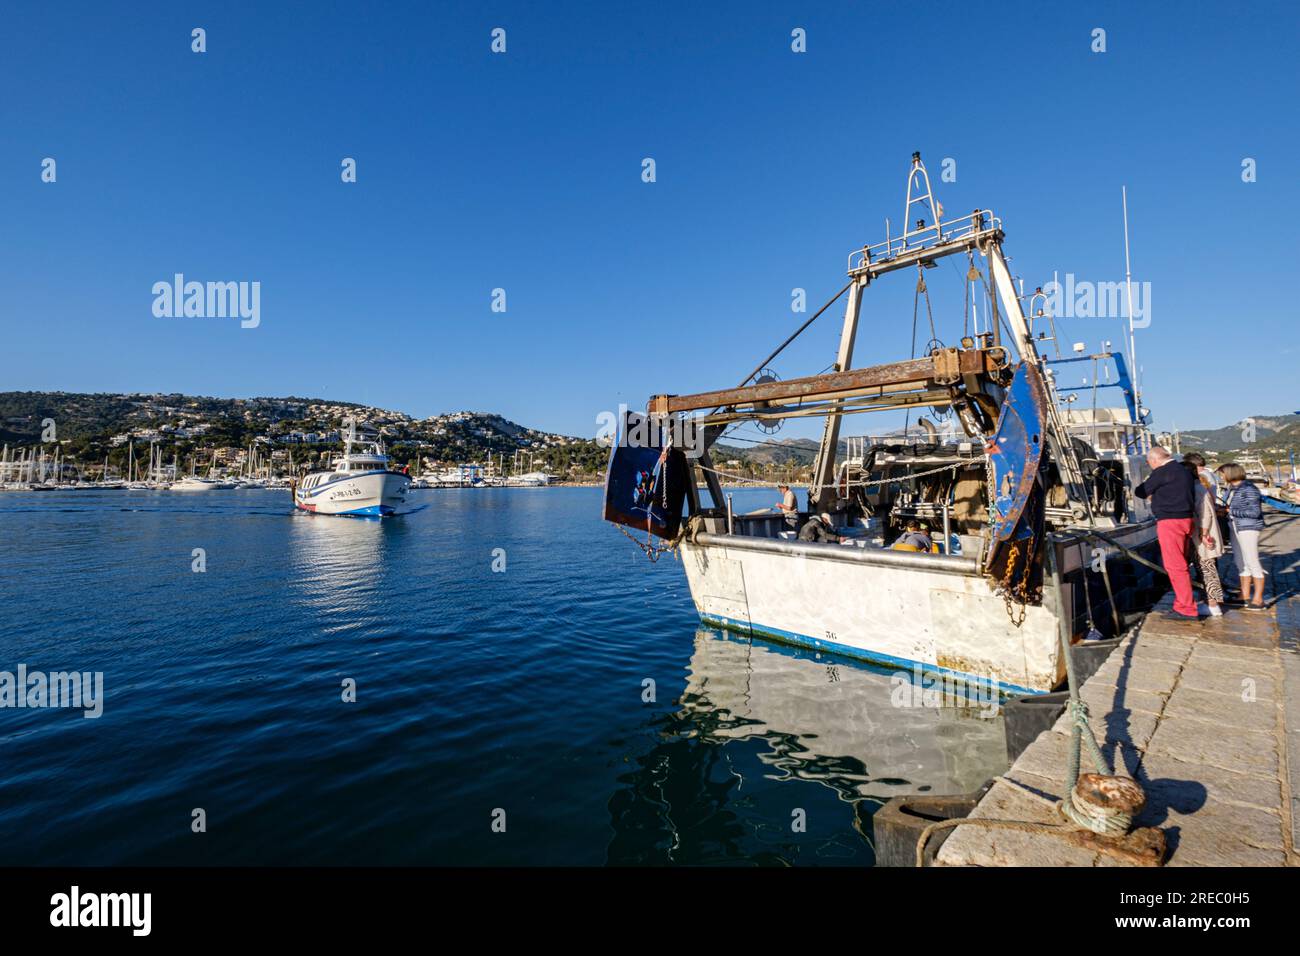 pesca de arrastre o pesca de bou, Andratx, Mallorca, Balearic